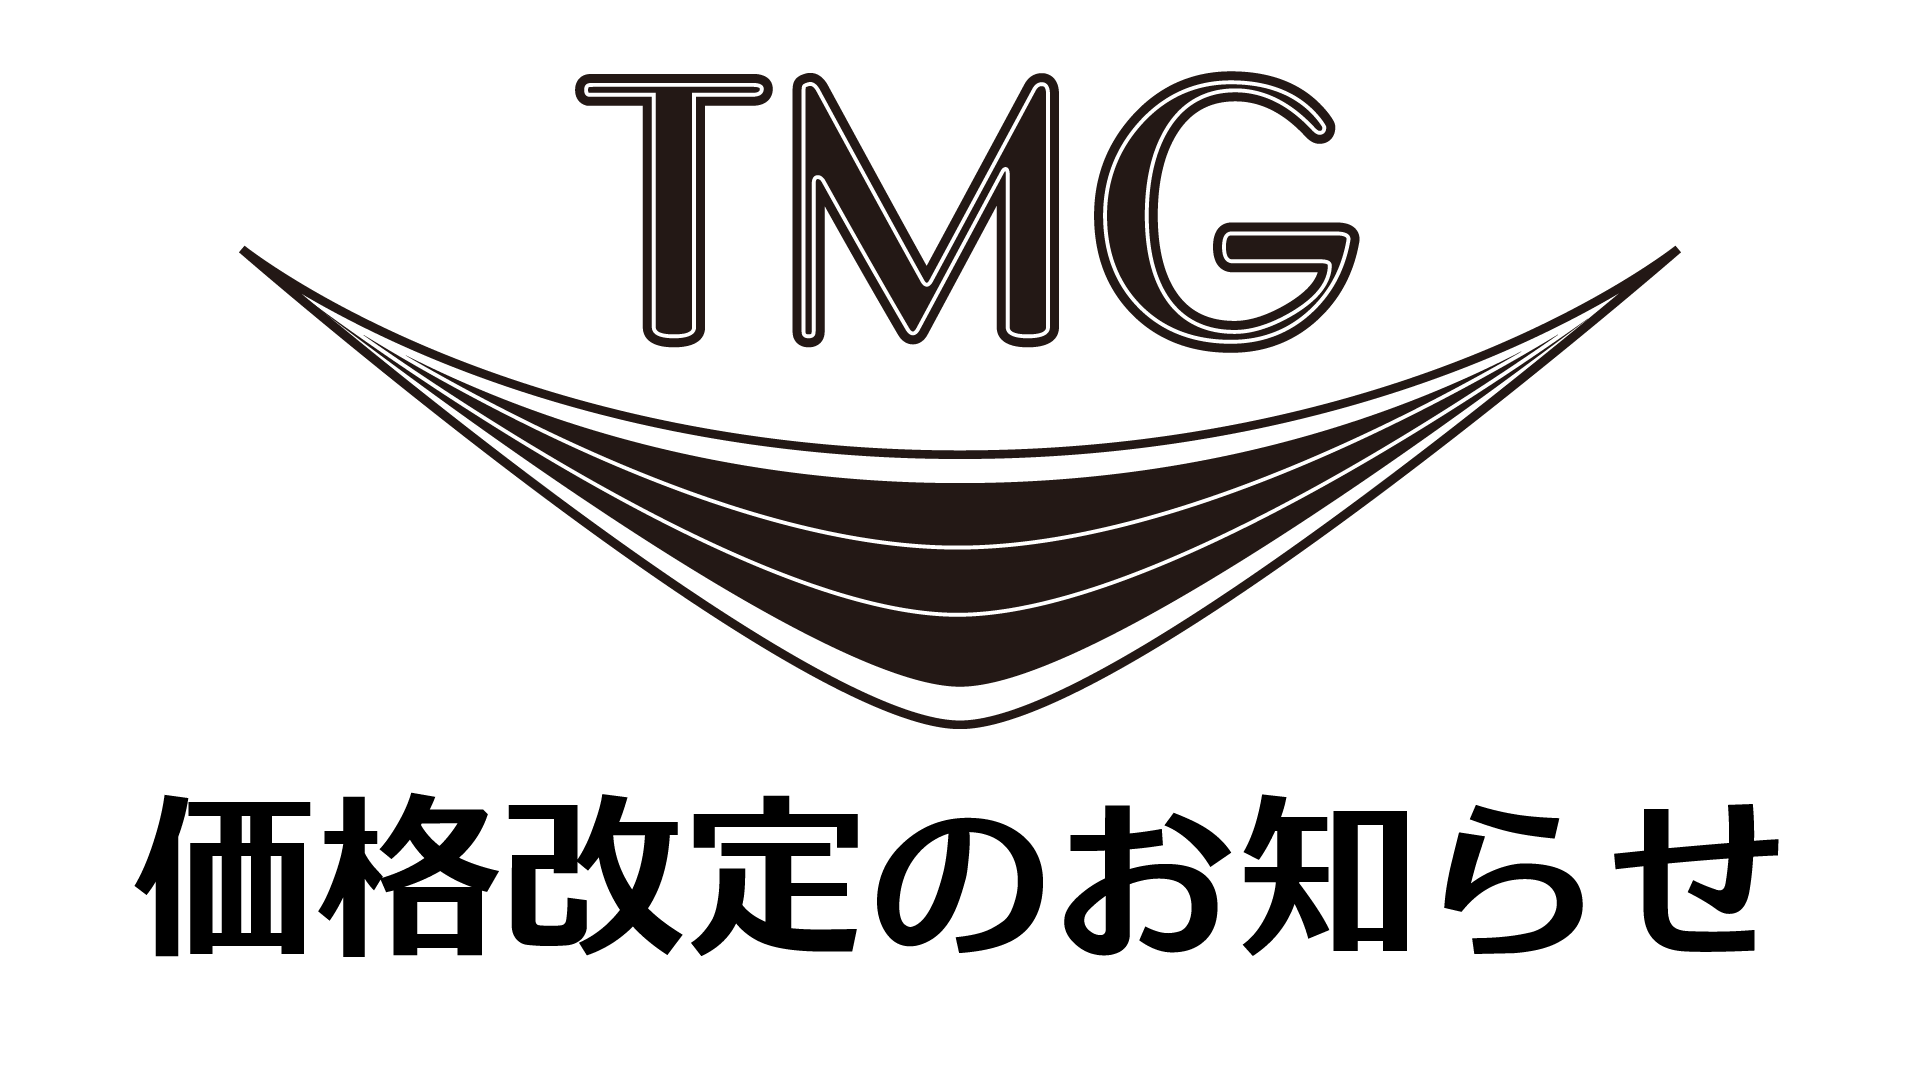 TMG Guitar 価格改定のお知らせ